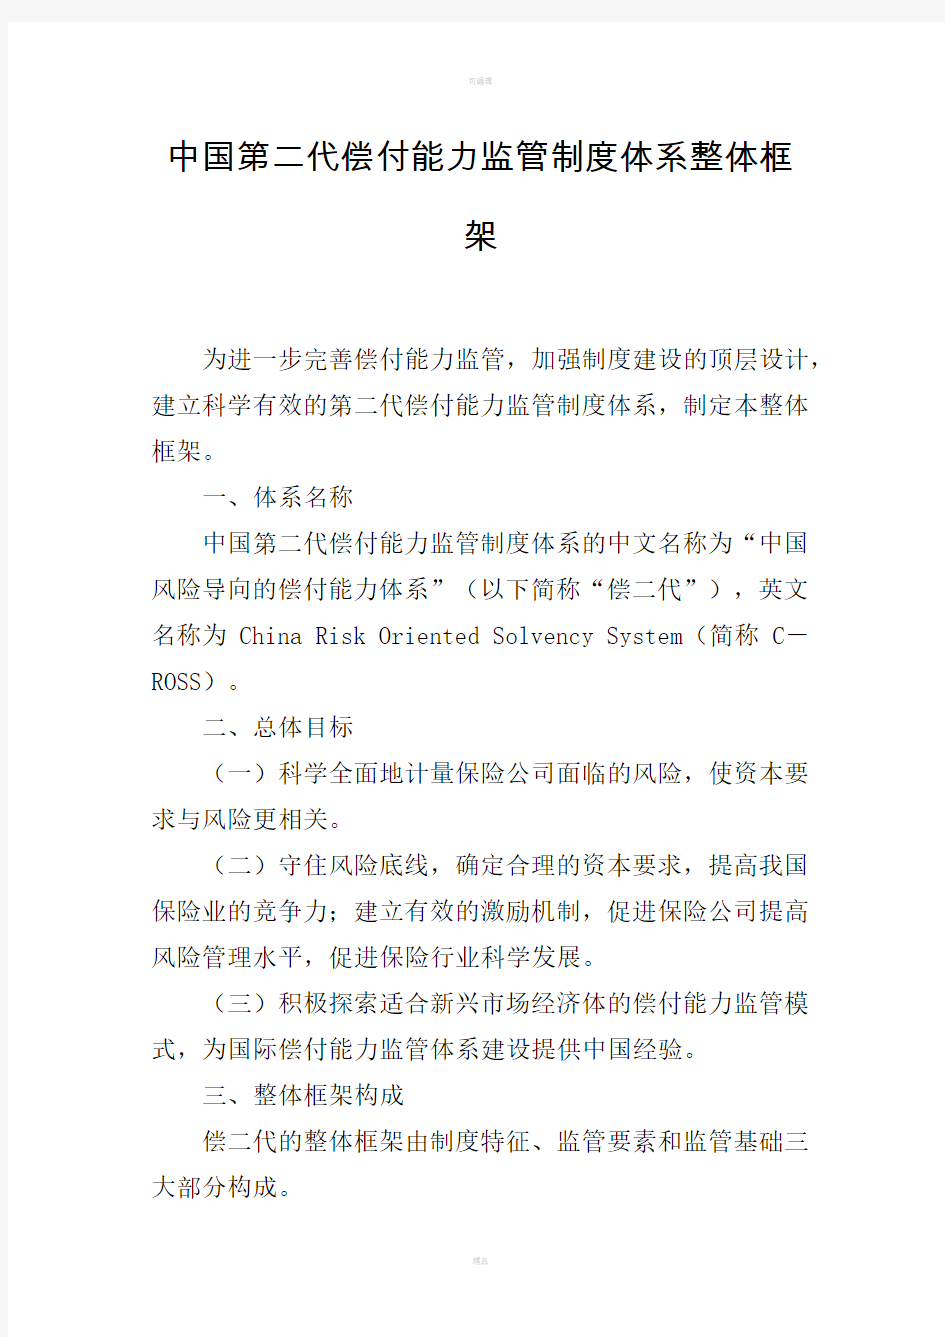 中国第二代偿付能力监管制度体系整体框架